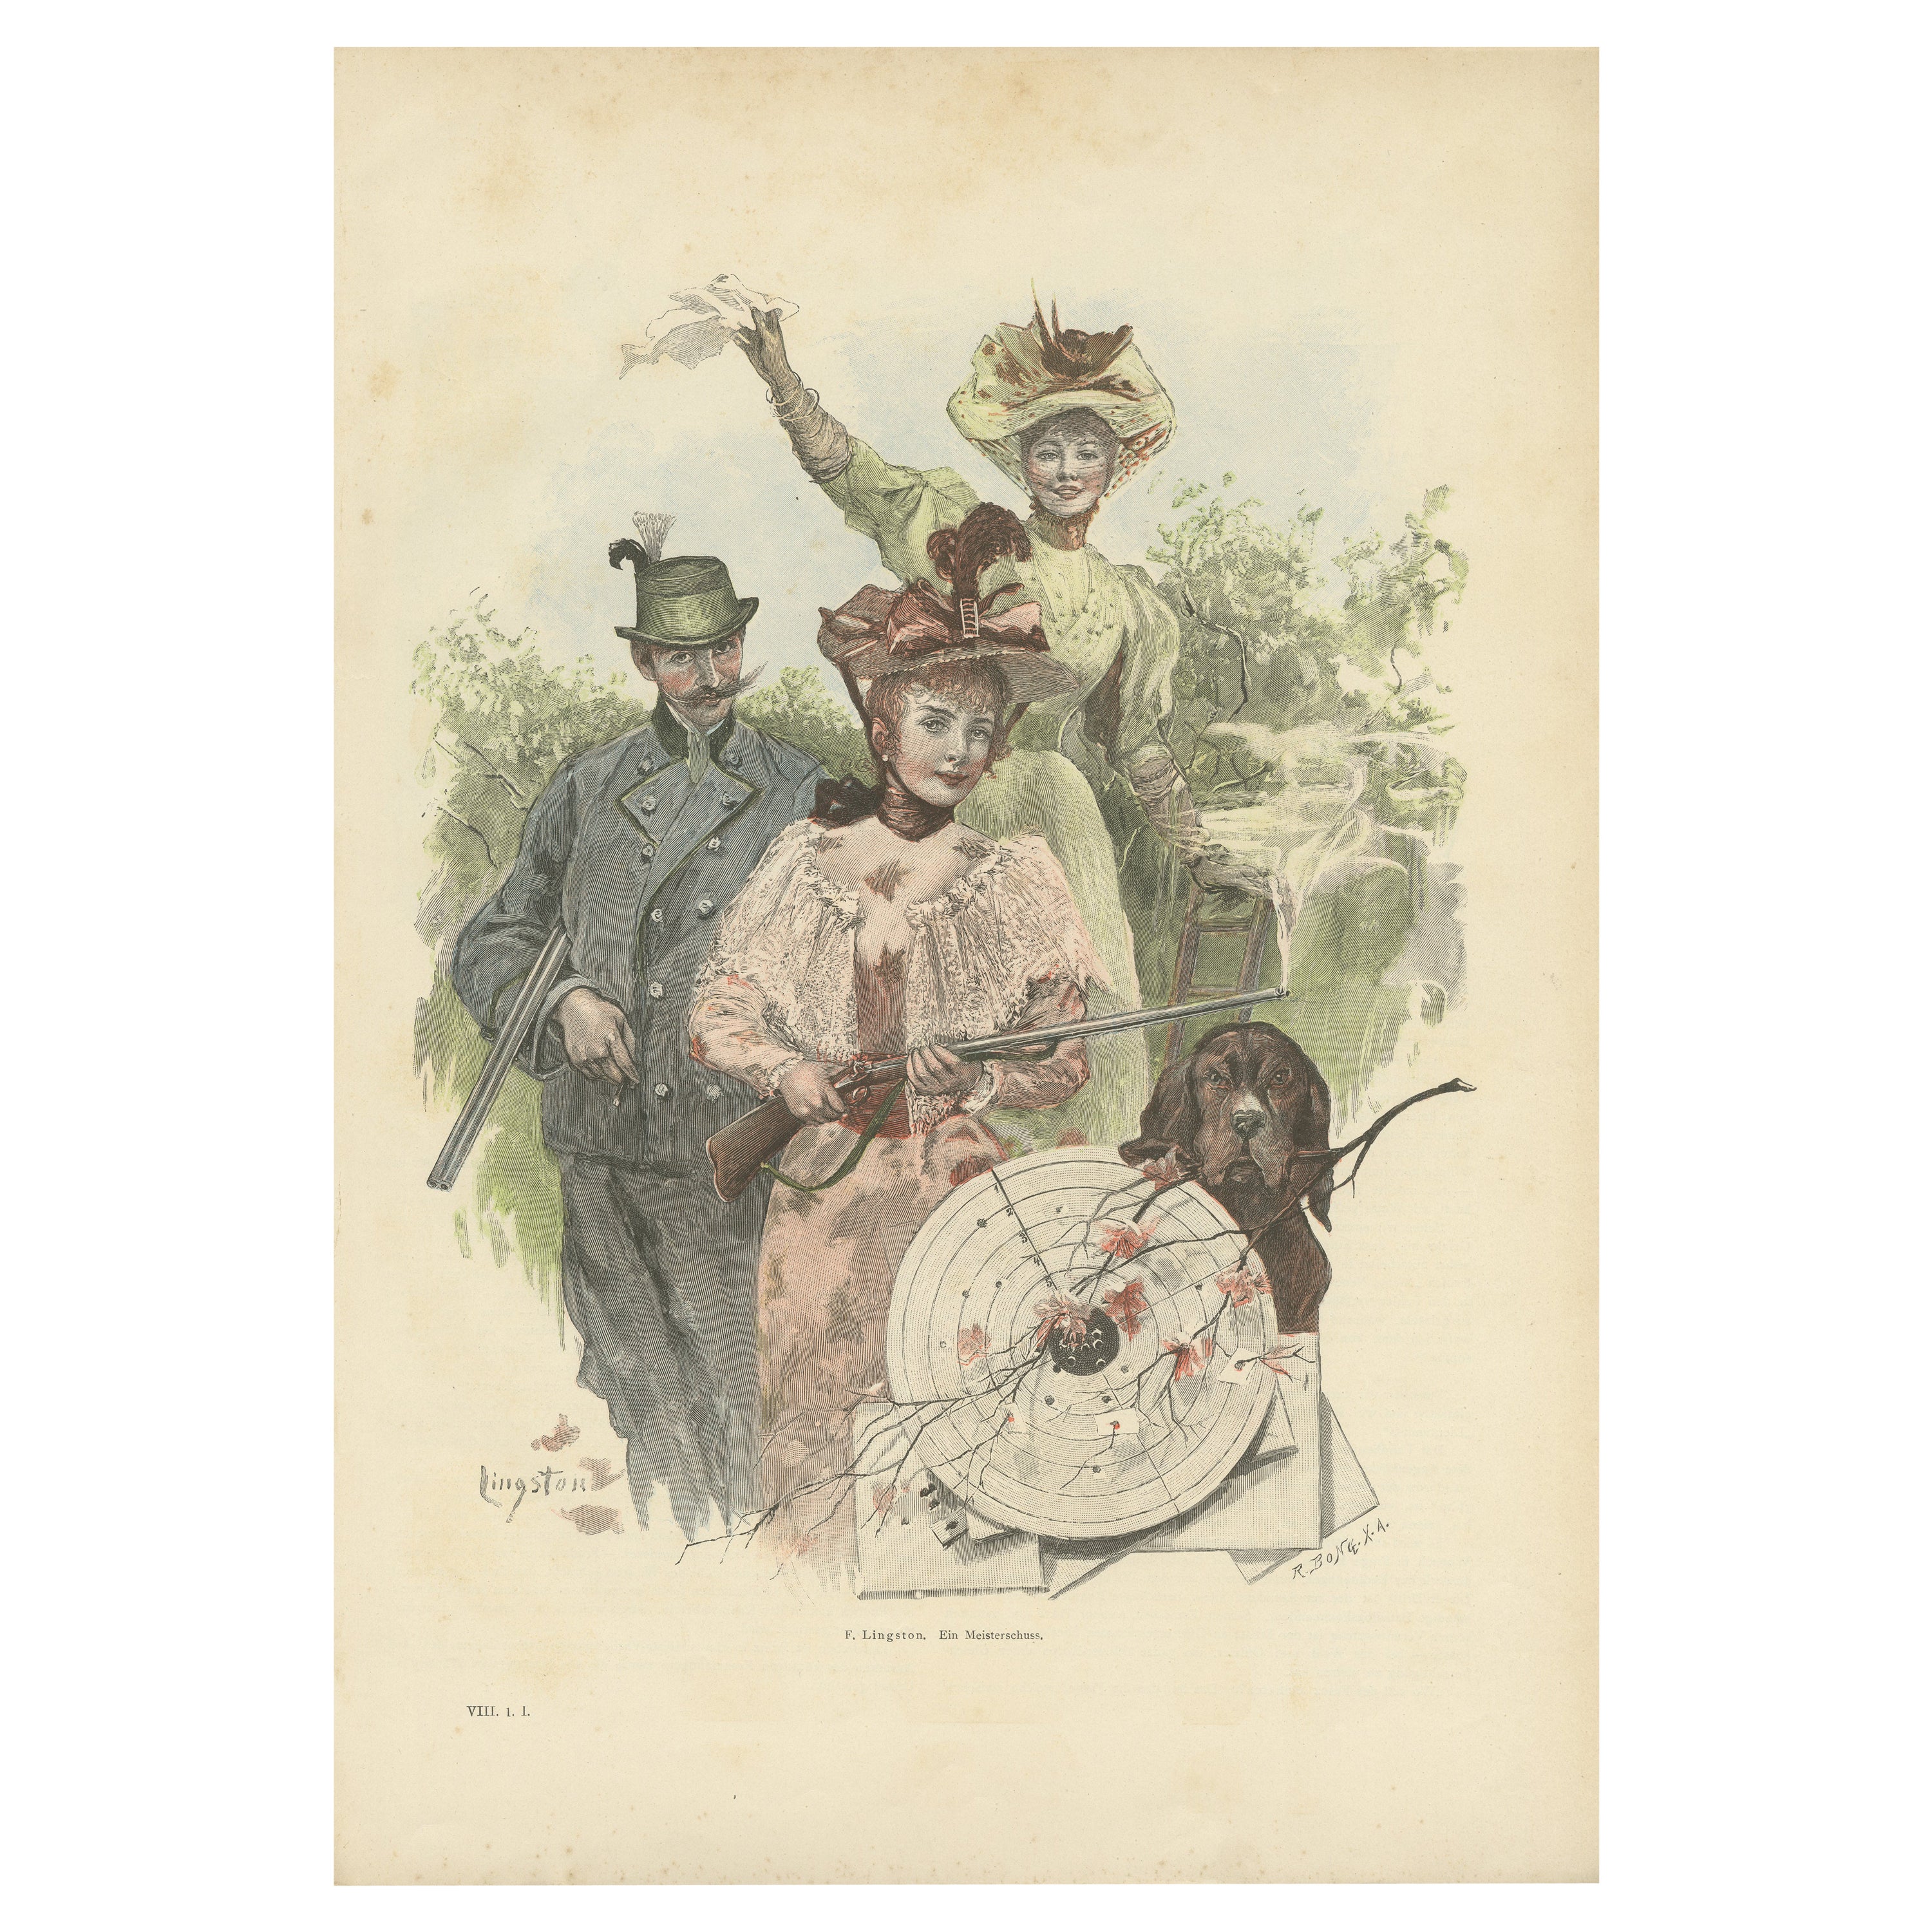 Marque de maître : Lithographie de scène de chasse de F. Lingston, 1895